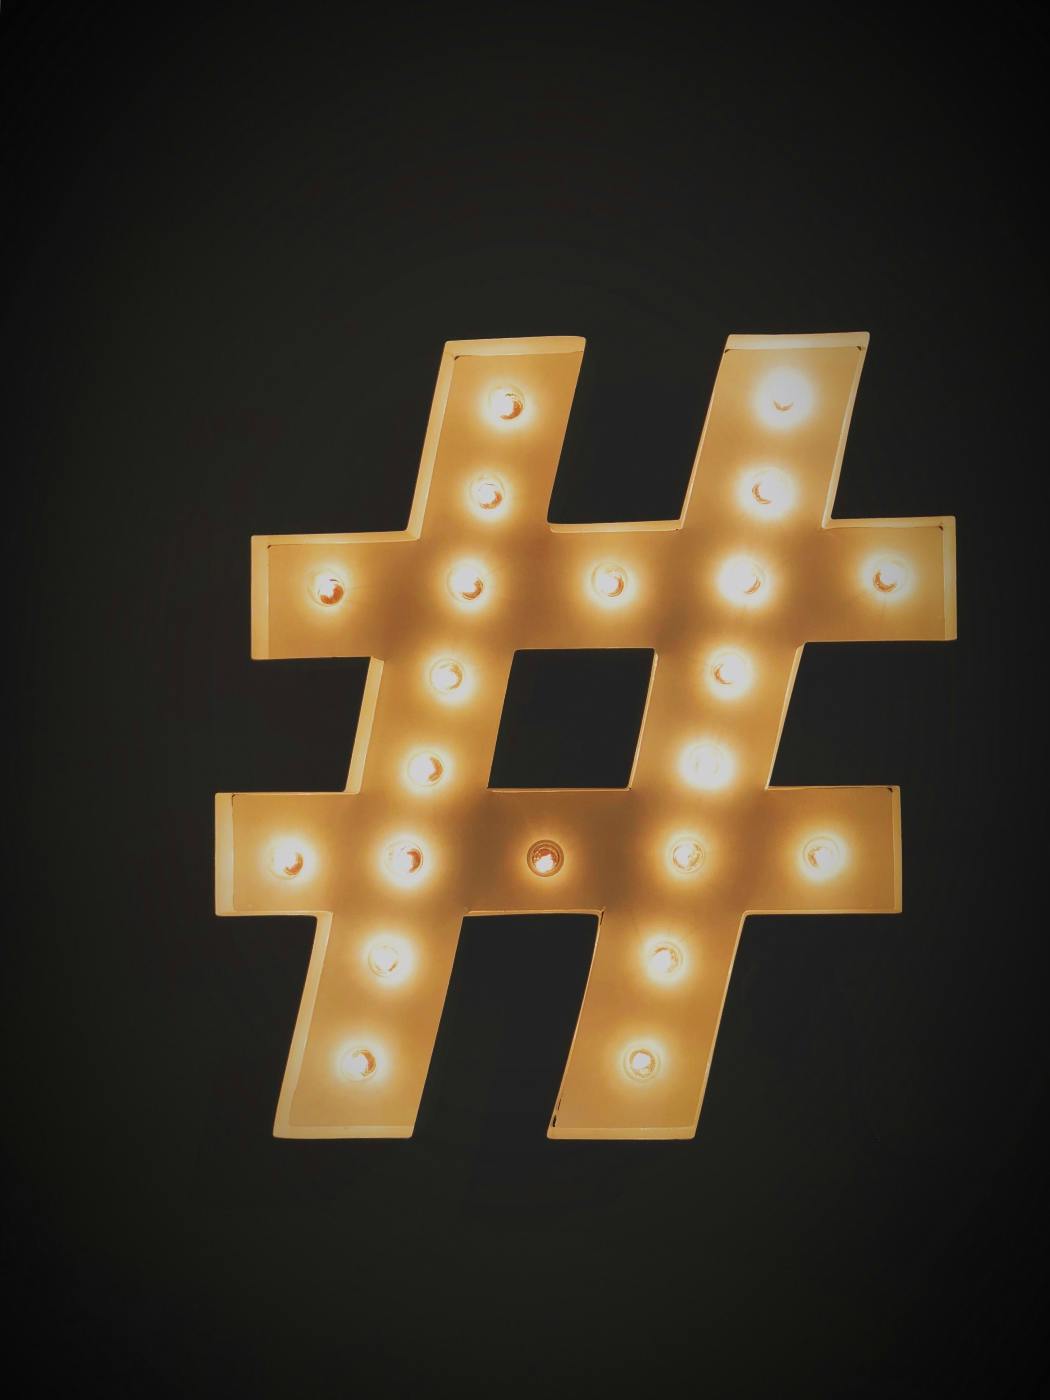 A lighted hashtag